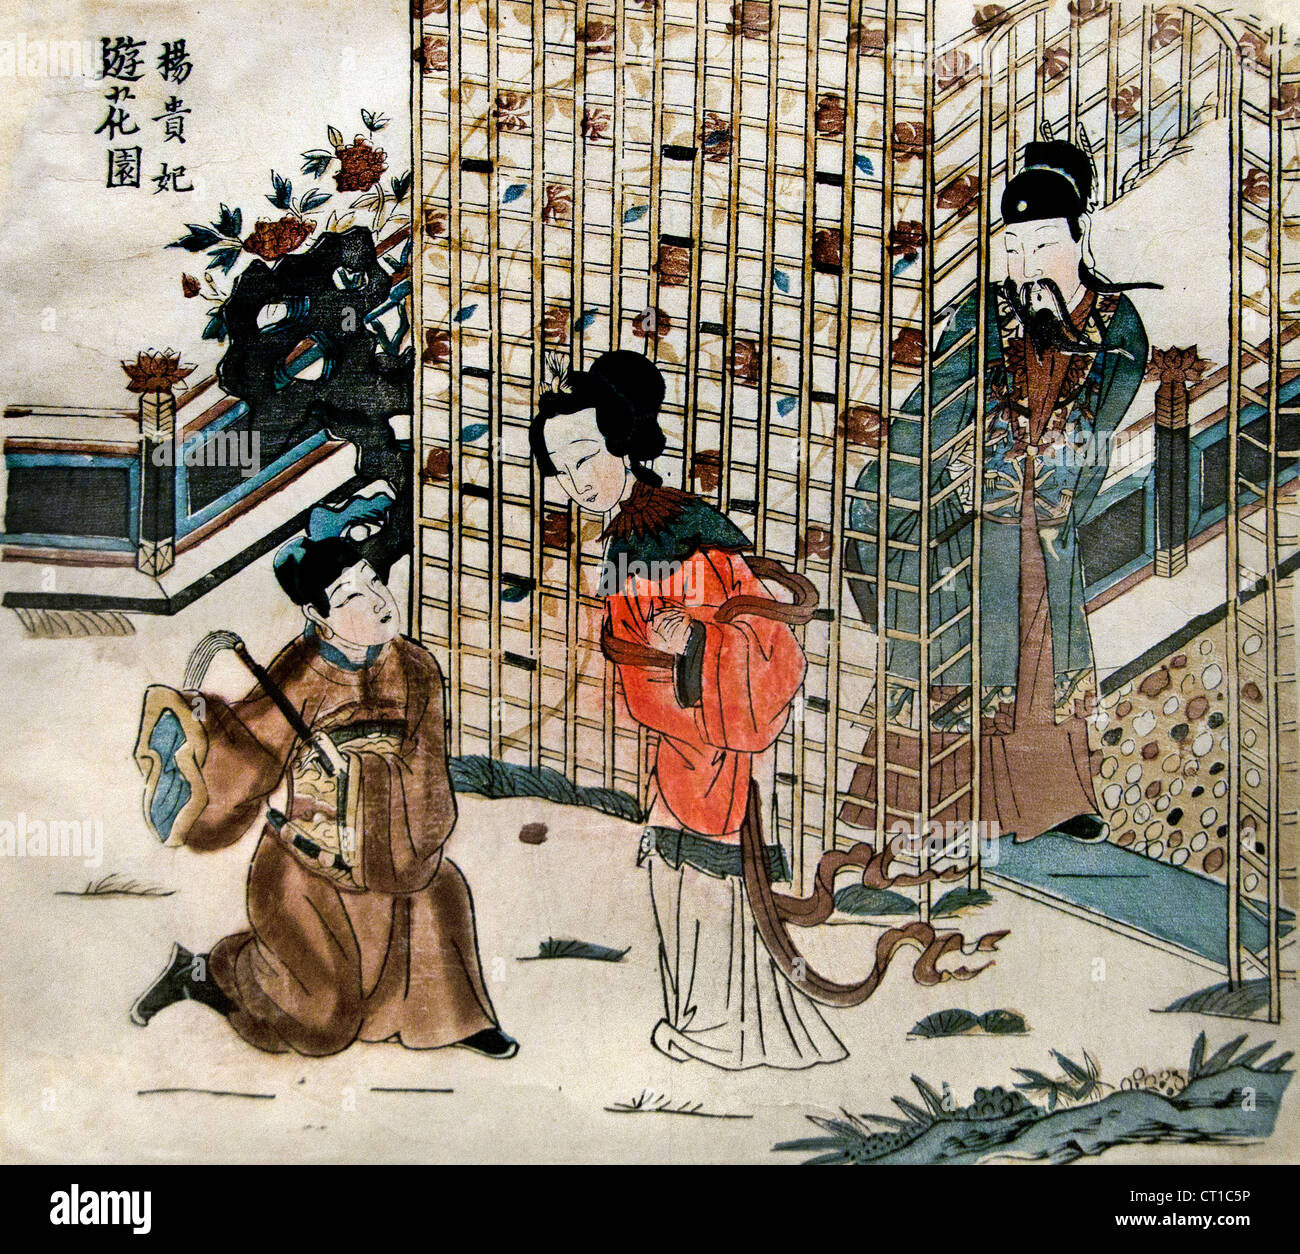 Yang Guifei dans un jardin de fleurs Qing ca. 1644-1753 Gravure sur bois Milieu de culture couleur sur papier Chine chinois Banque D'Images